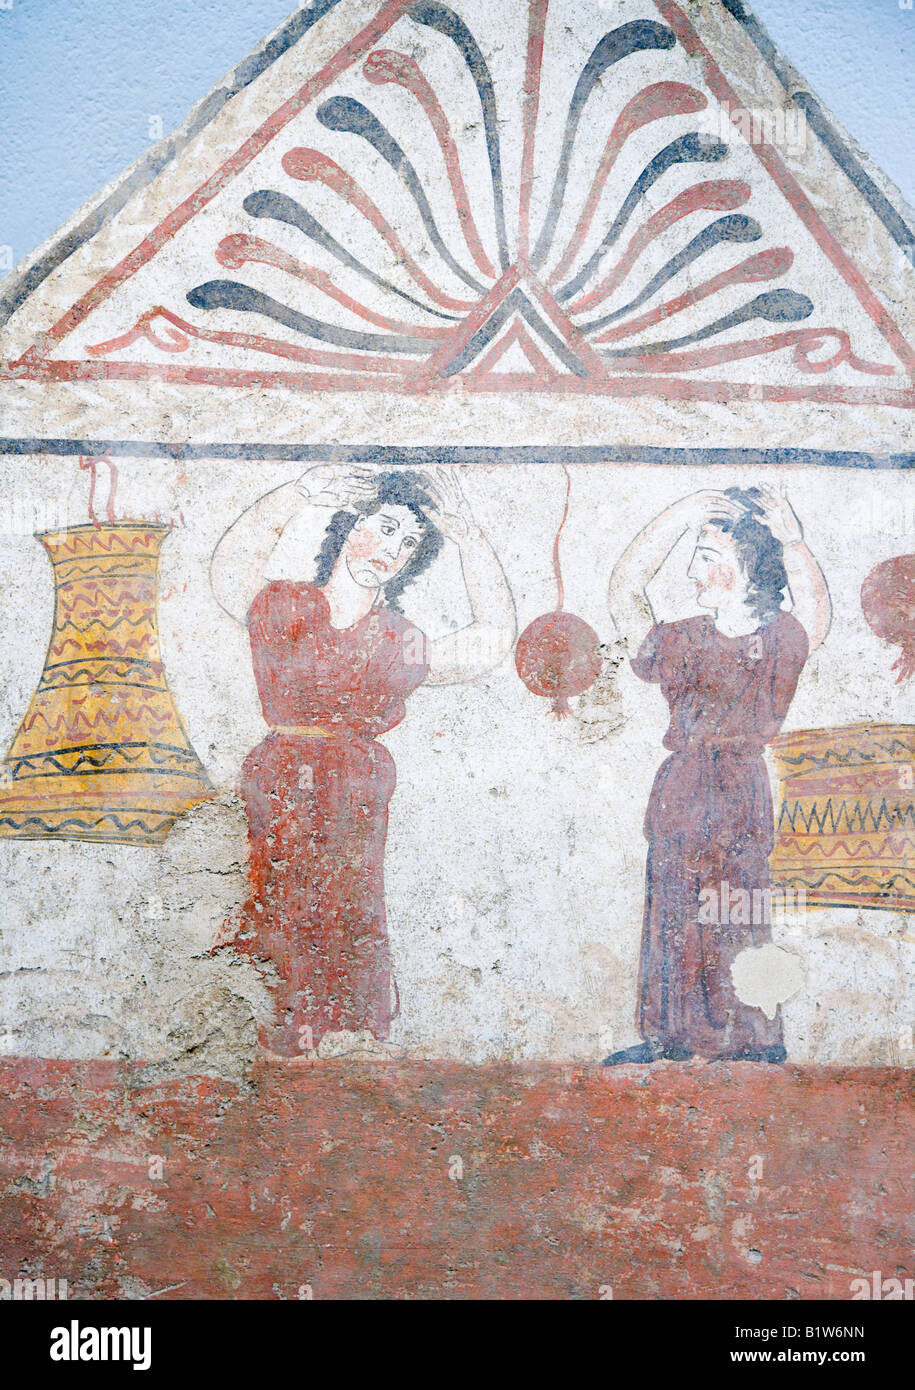 La mujer llorando y jalarse el cabello fresco griego Paestum Campania Italia Foto de stock